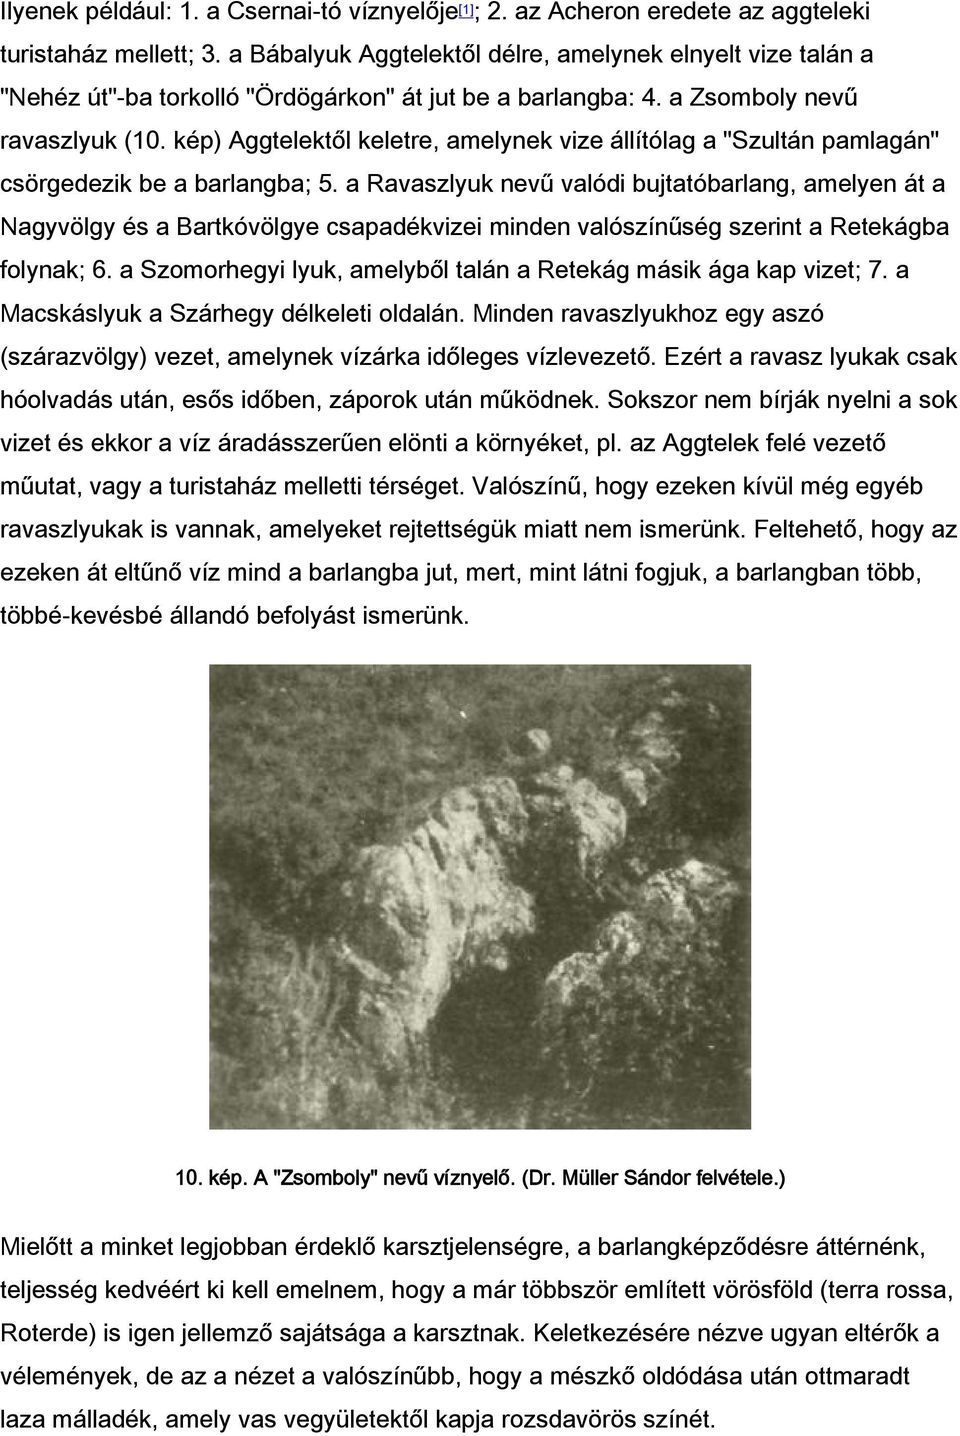 kép) Aggtelektől keletre, amelynek vize állítólag a "Szultán pamlagán" csörgedezik be a barlangba; 5.